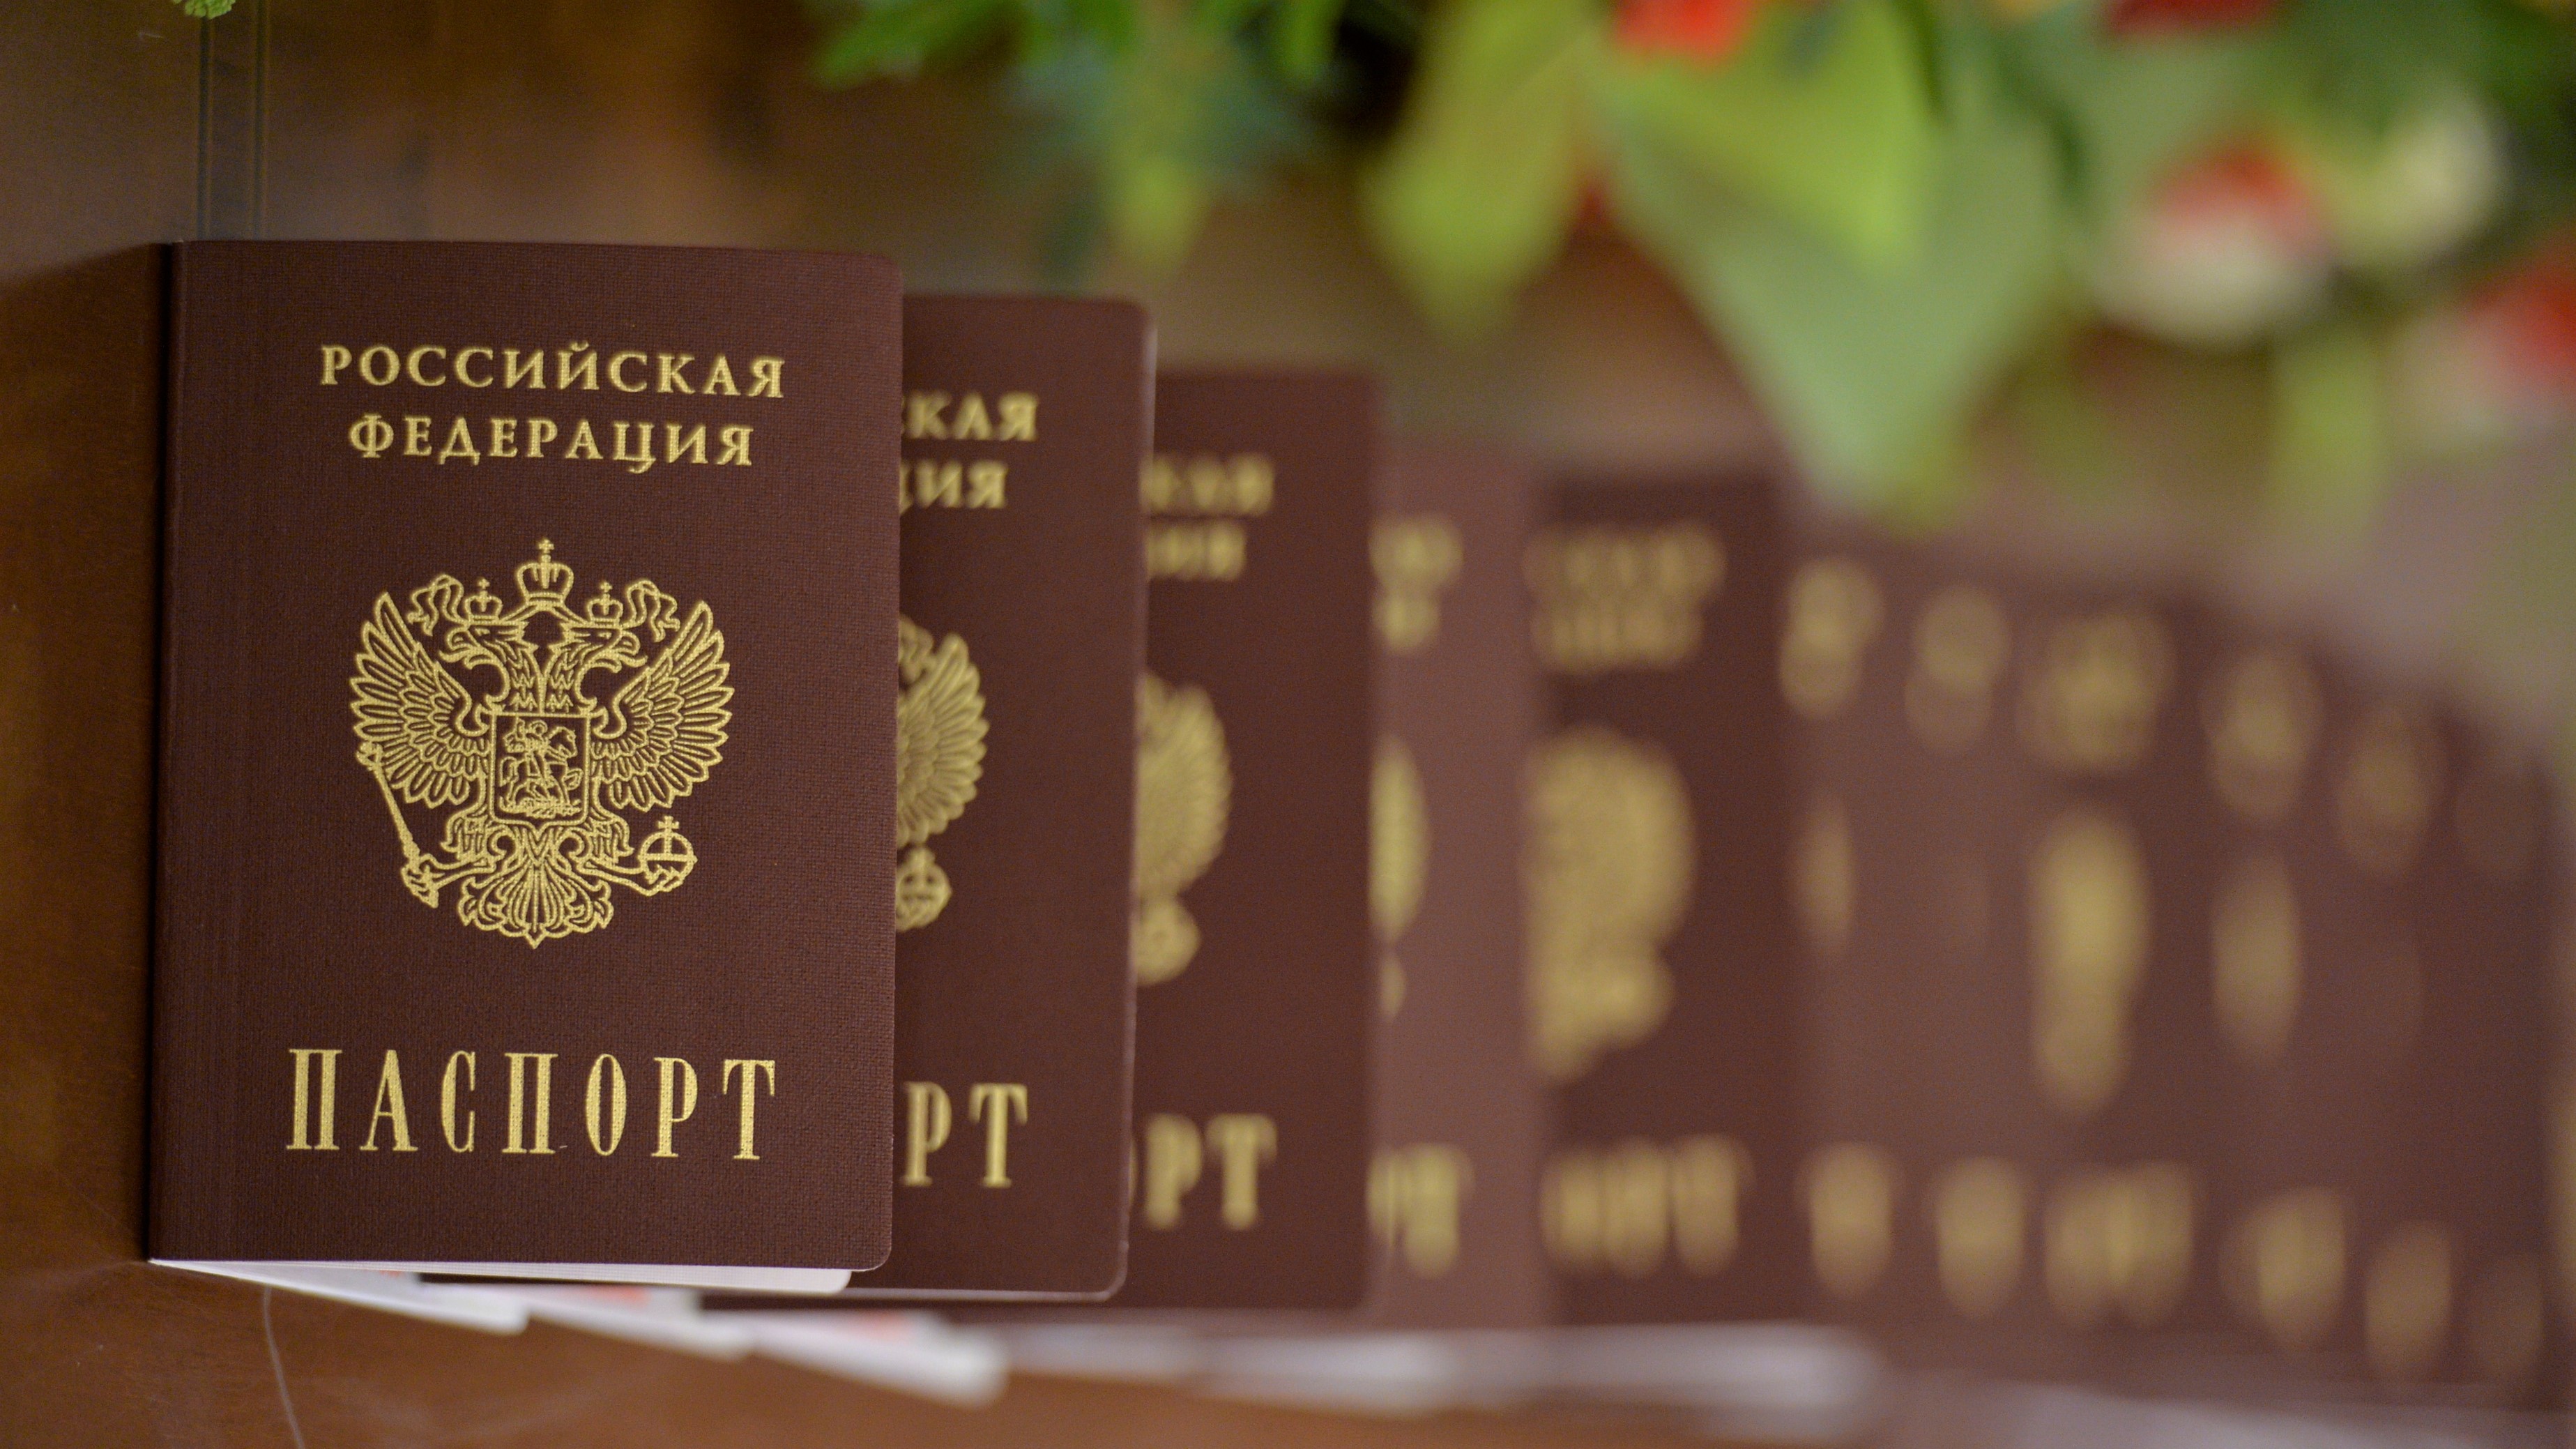 Как оплатить пошлину за паспорт через Сбербанк - способы